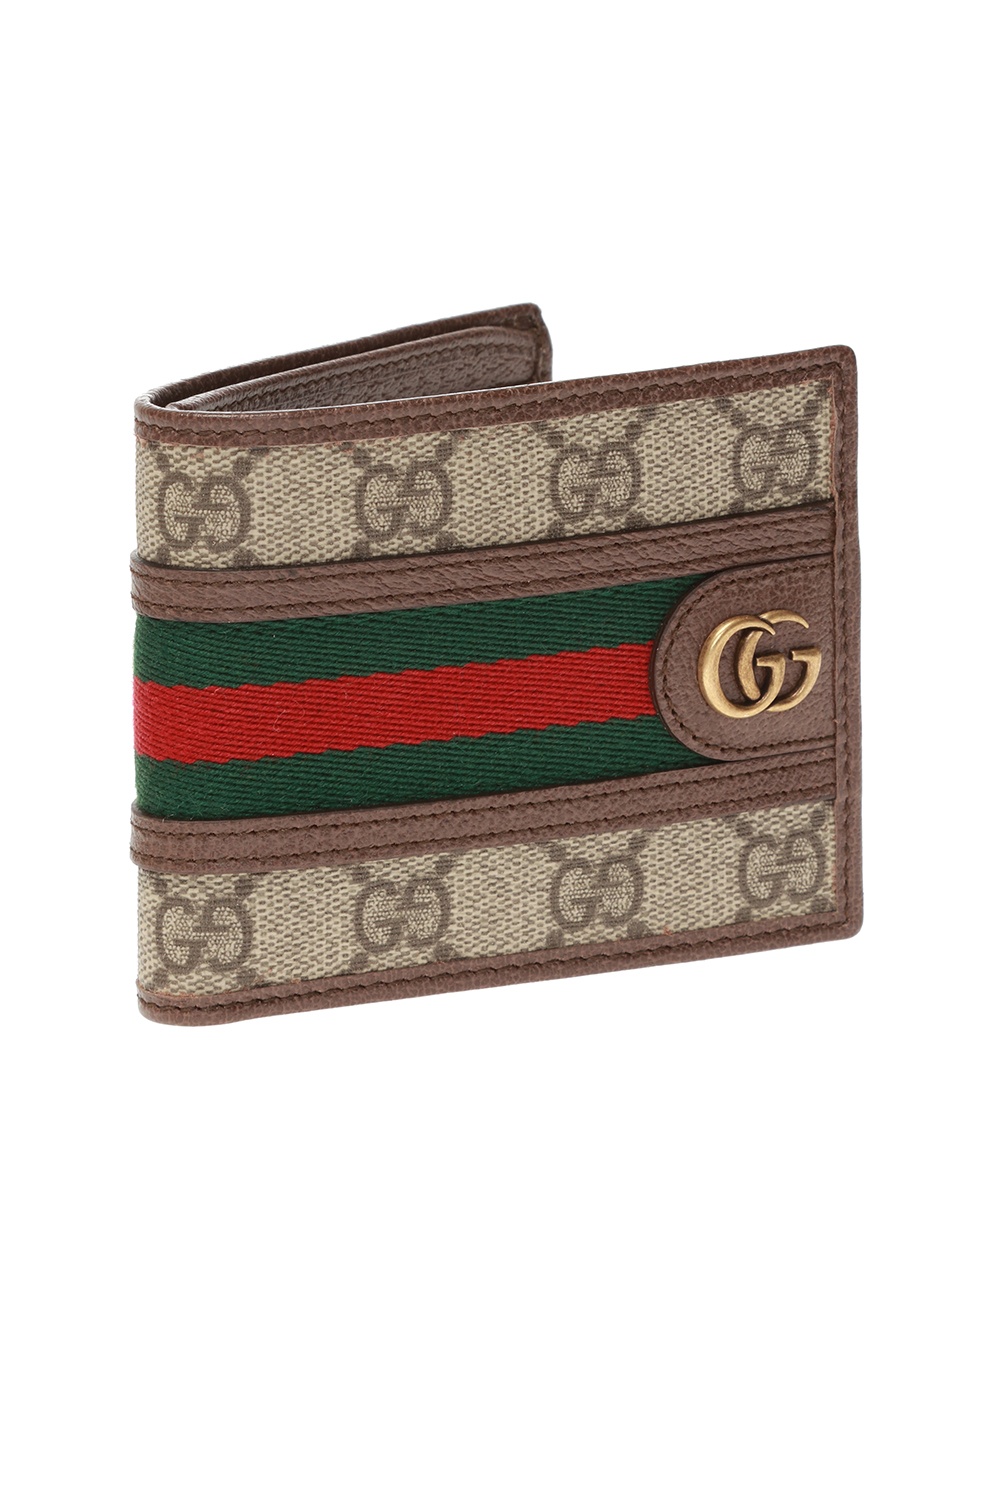 Gucci gelfalten wallet